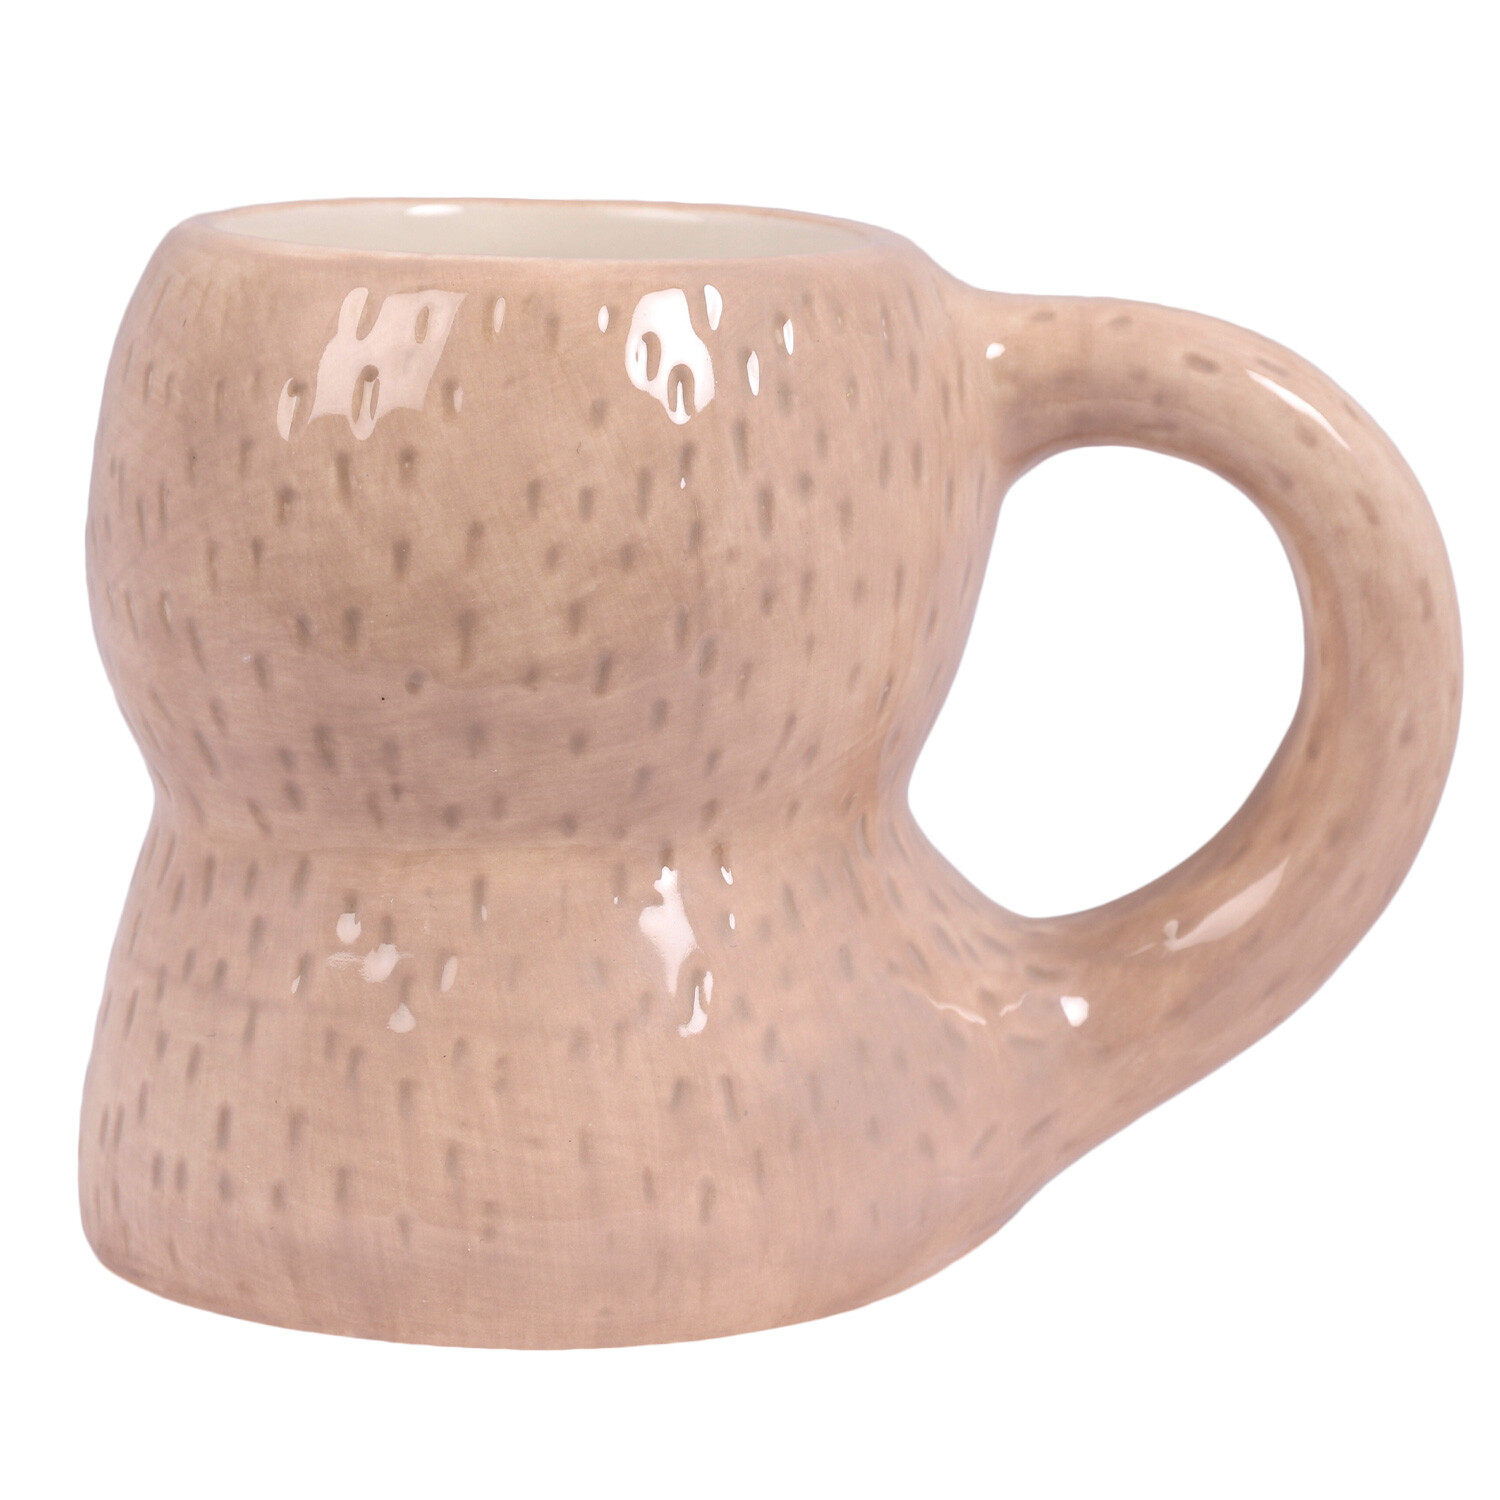 3D Sloth Mug - Brown Image 4